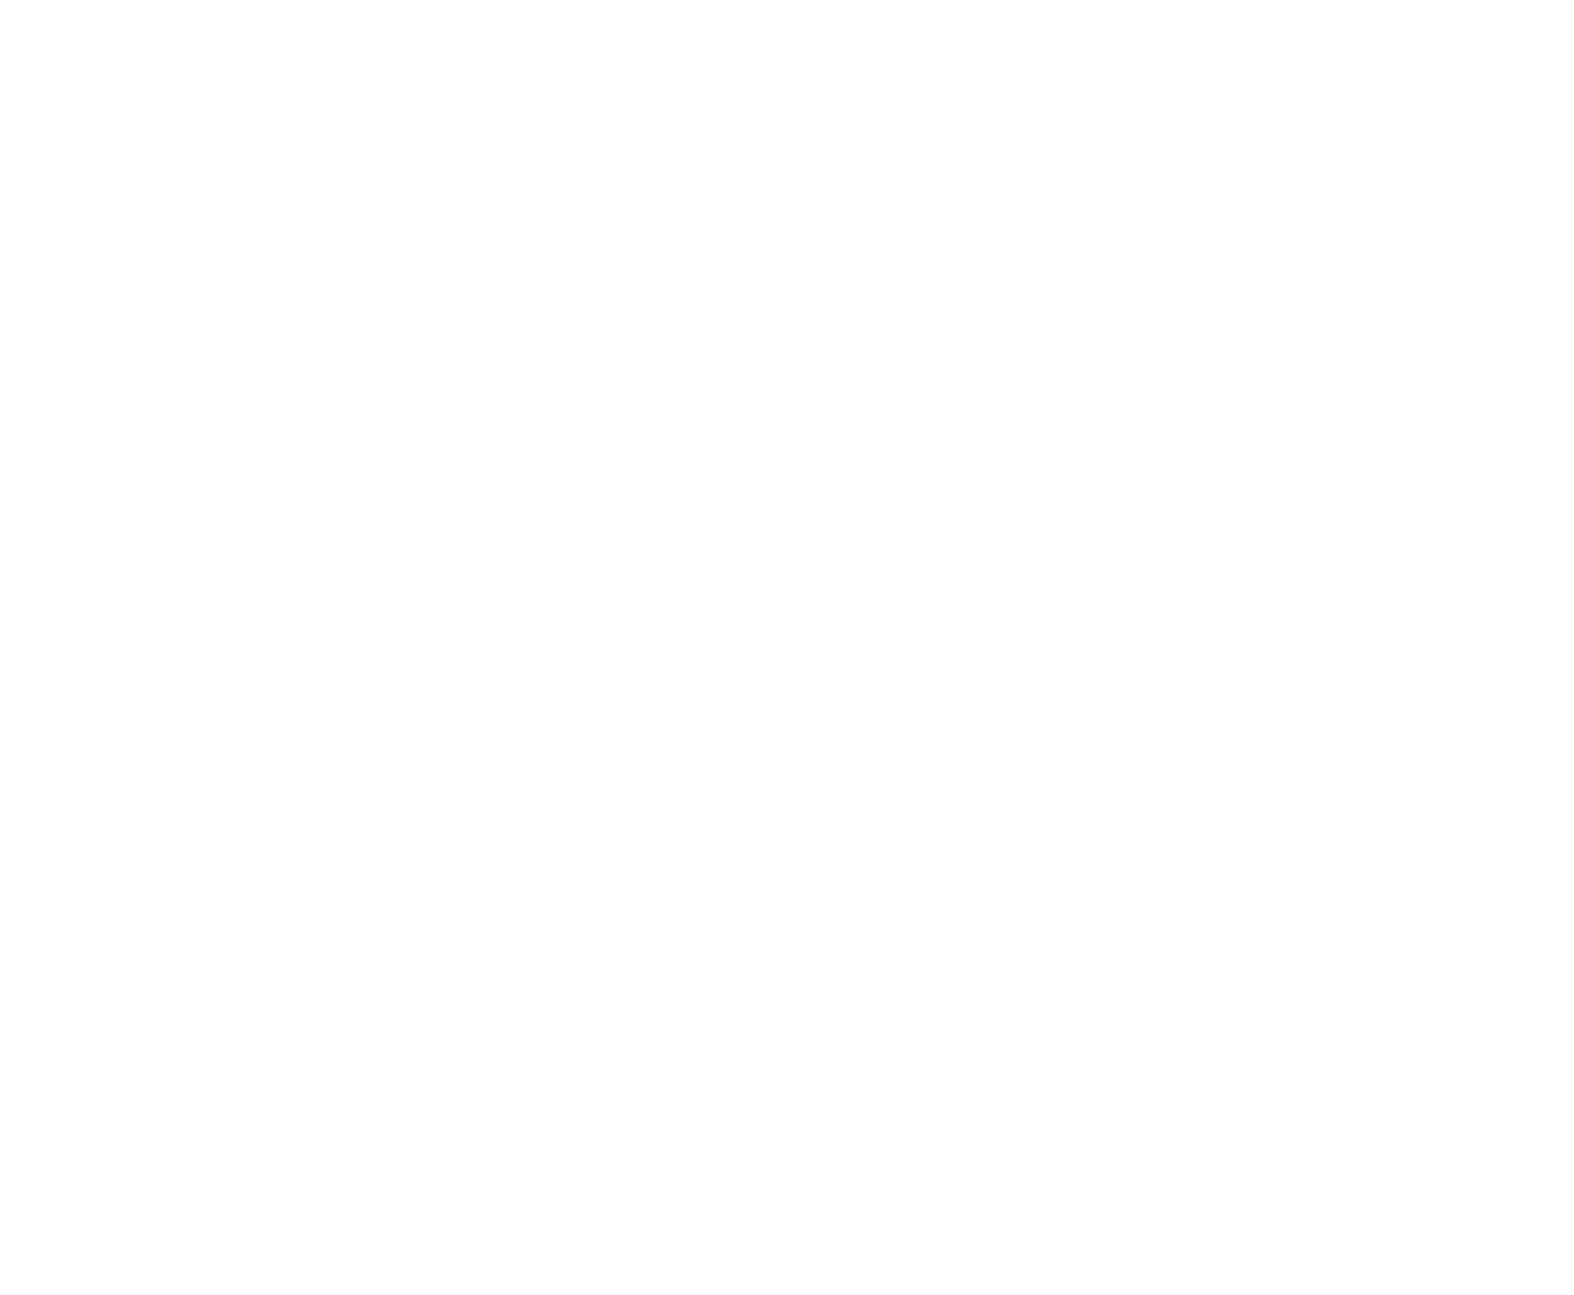 Partner Communications logo for dark backgrounds (transparent PNG)